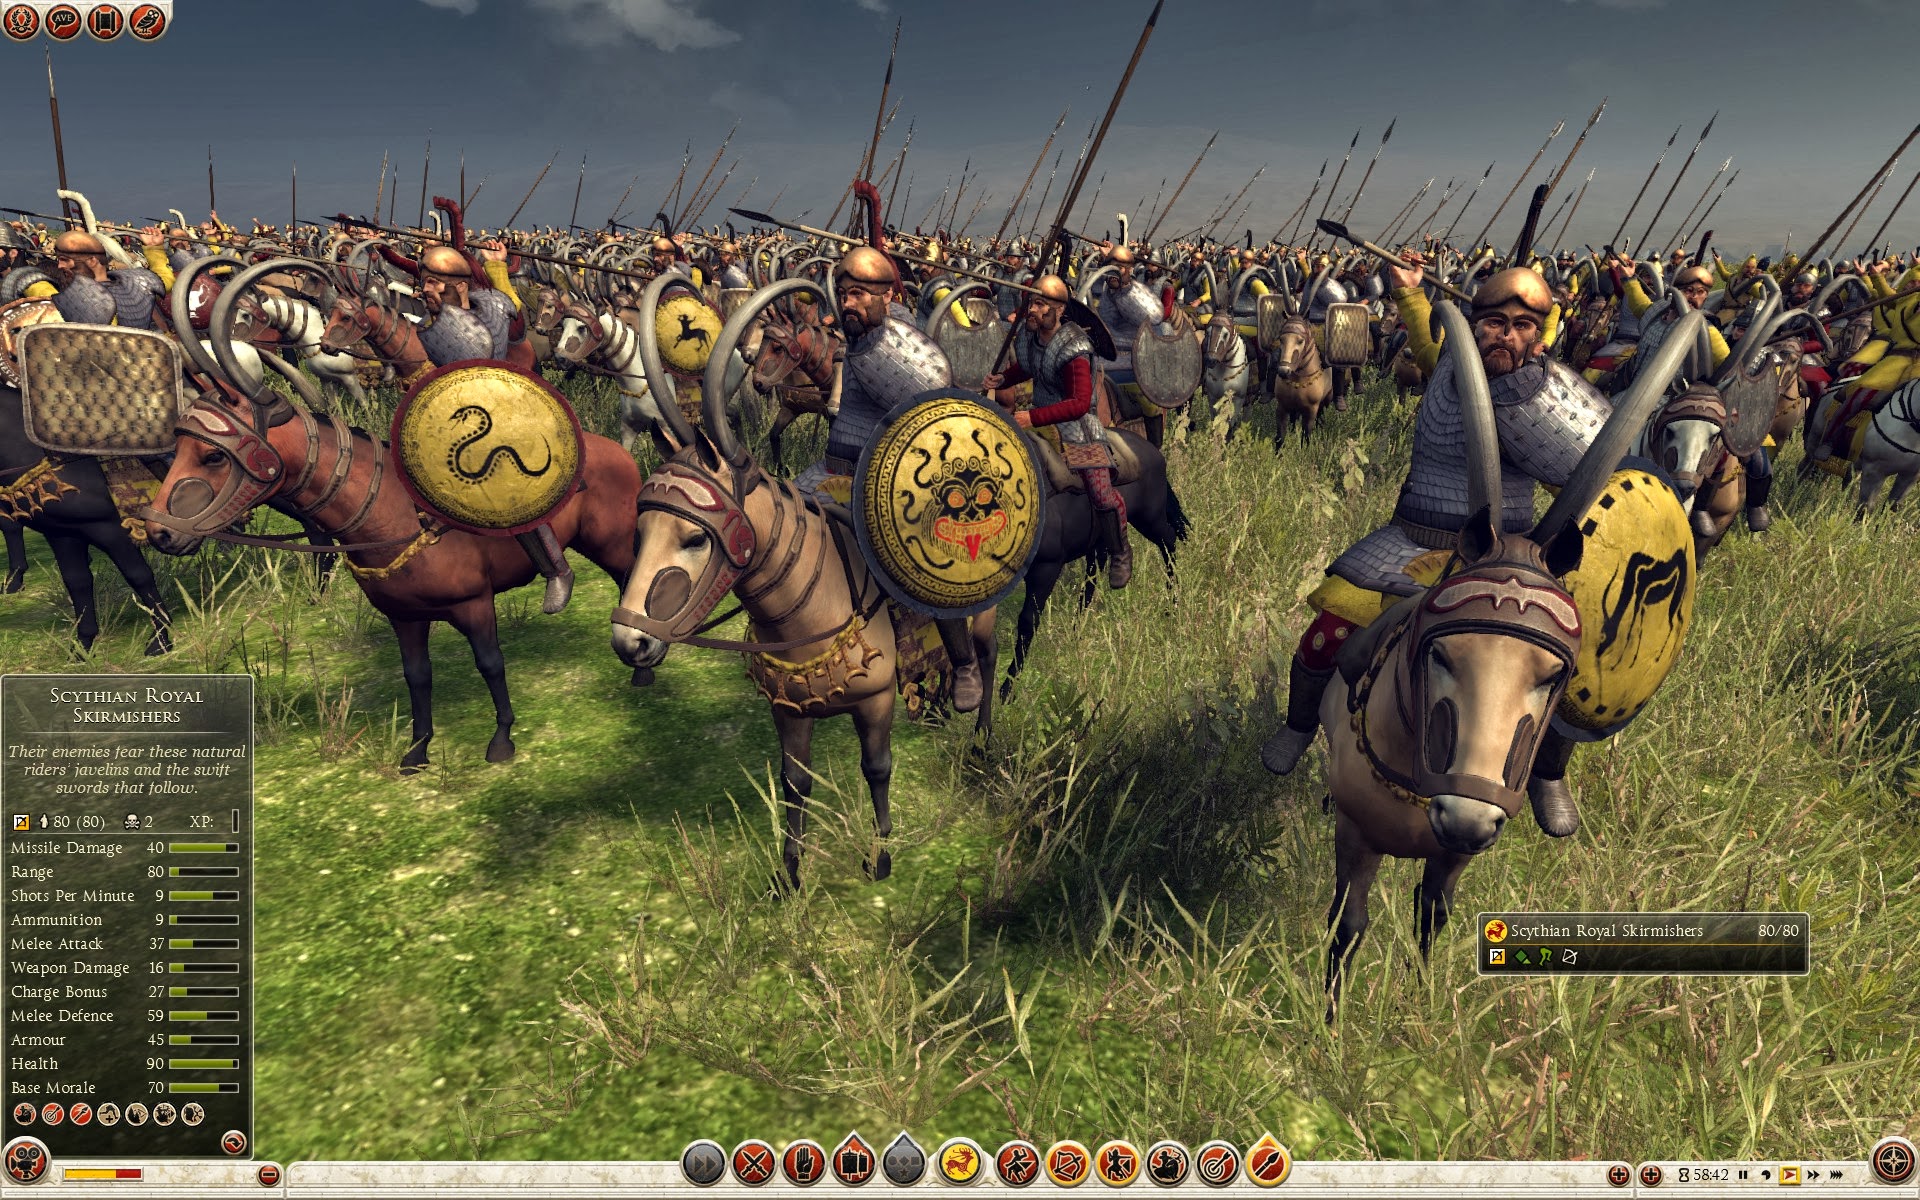 Scythian Royal Skirmishers